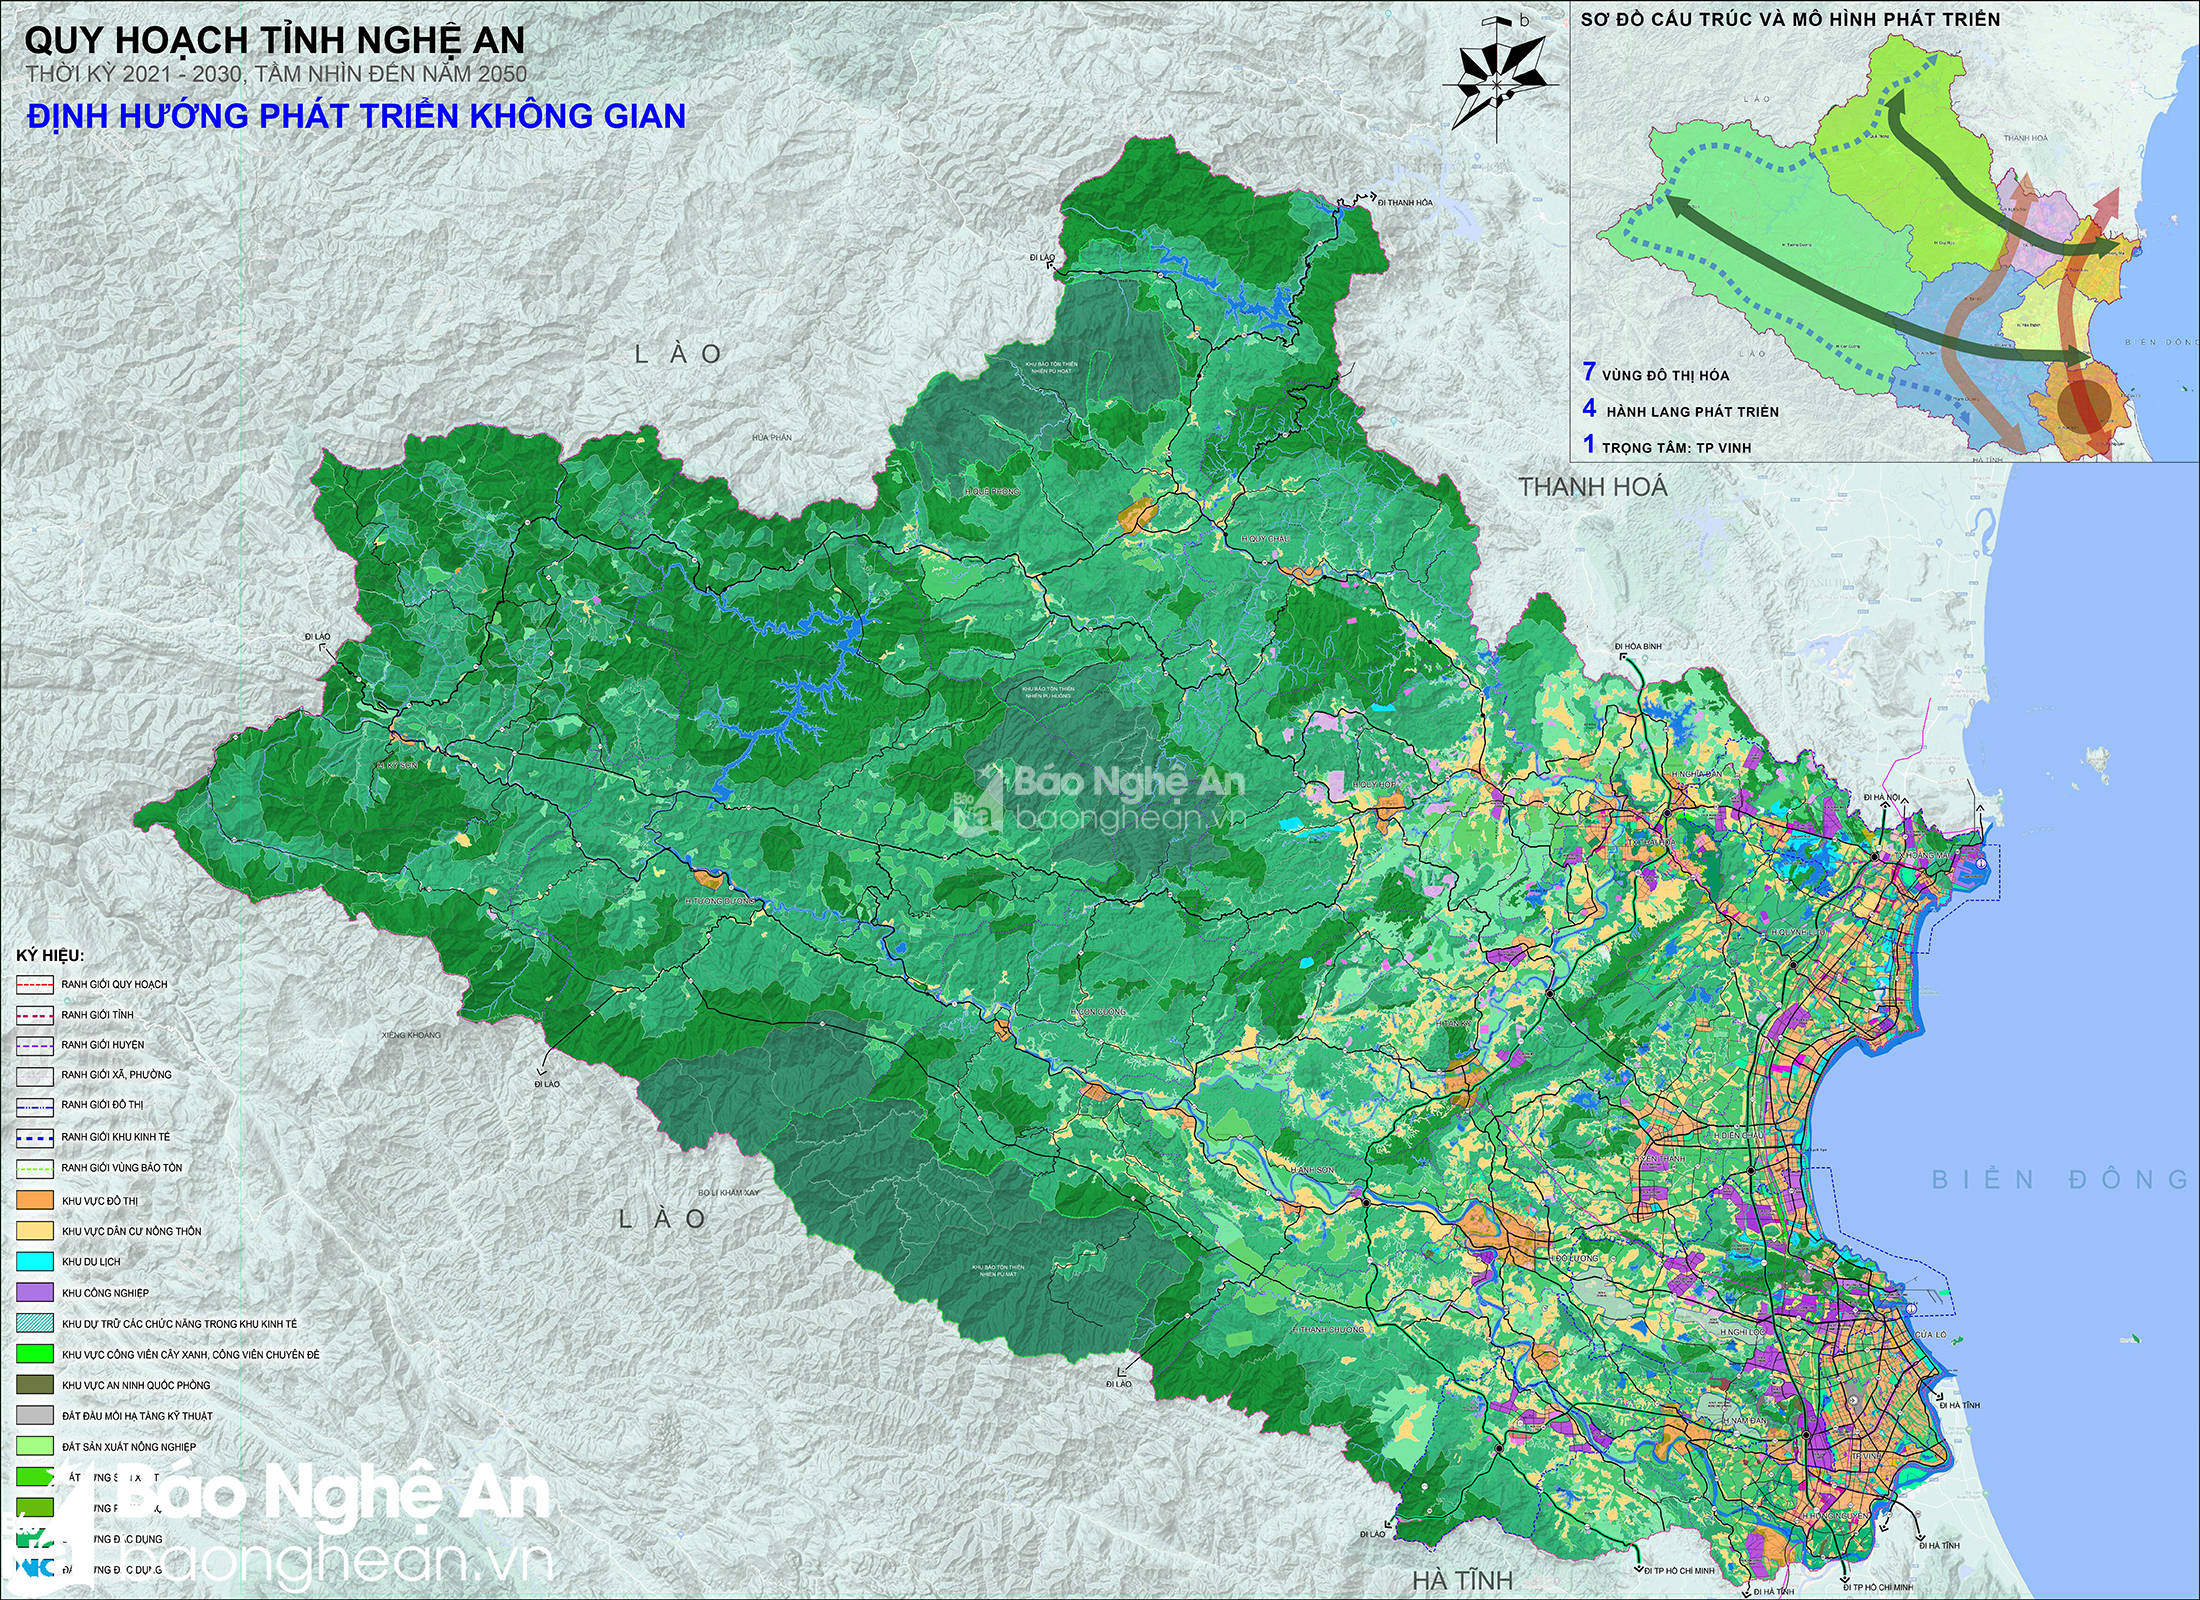 Định hướng phát triển không gian tỉnh Nghệ An thời kỳ 2021 - 2030, tầm nhìn đế năm 2050.